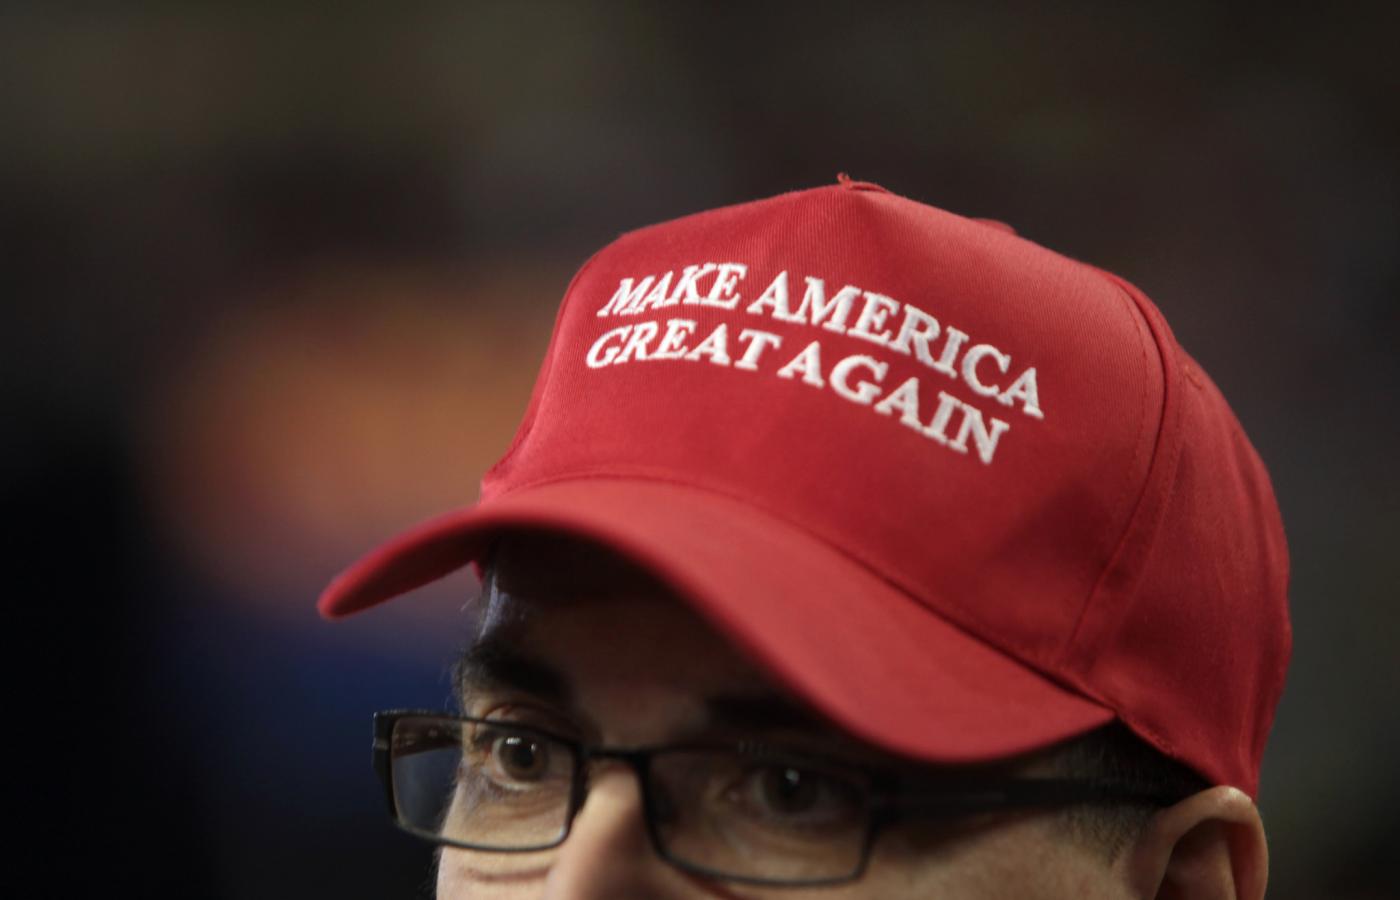 Czapeczka z napisem „Make America Great Again” stała się symbolem rozpoznawczym Trumpa i jego zwolenników.